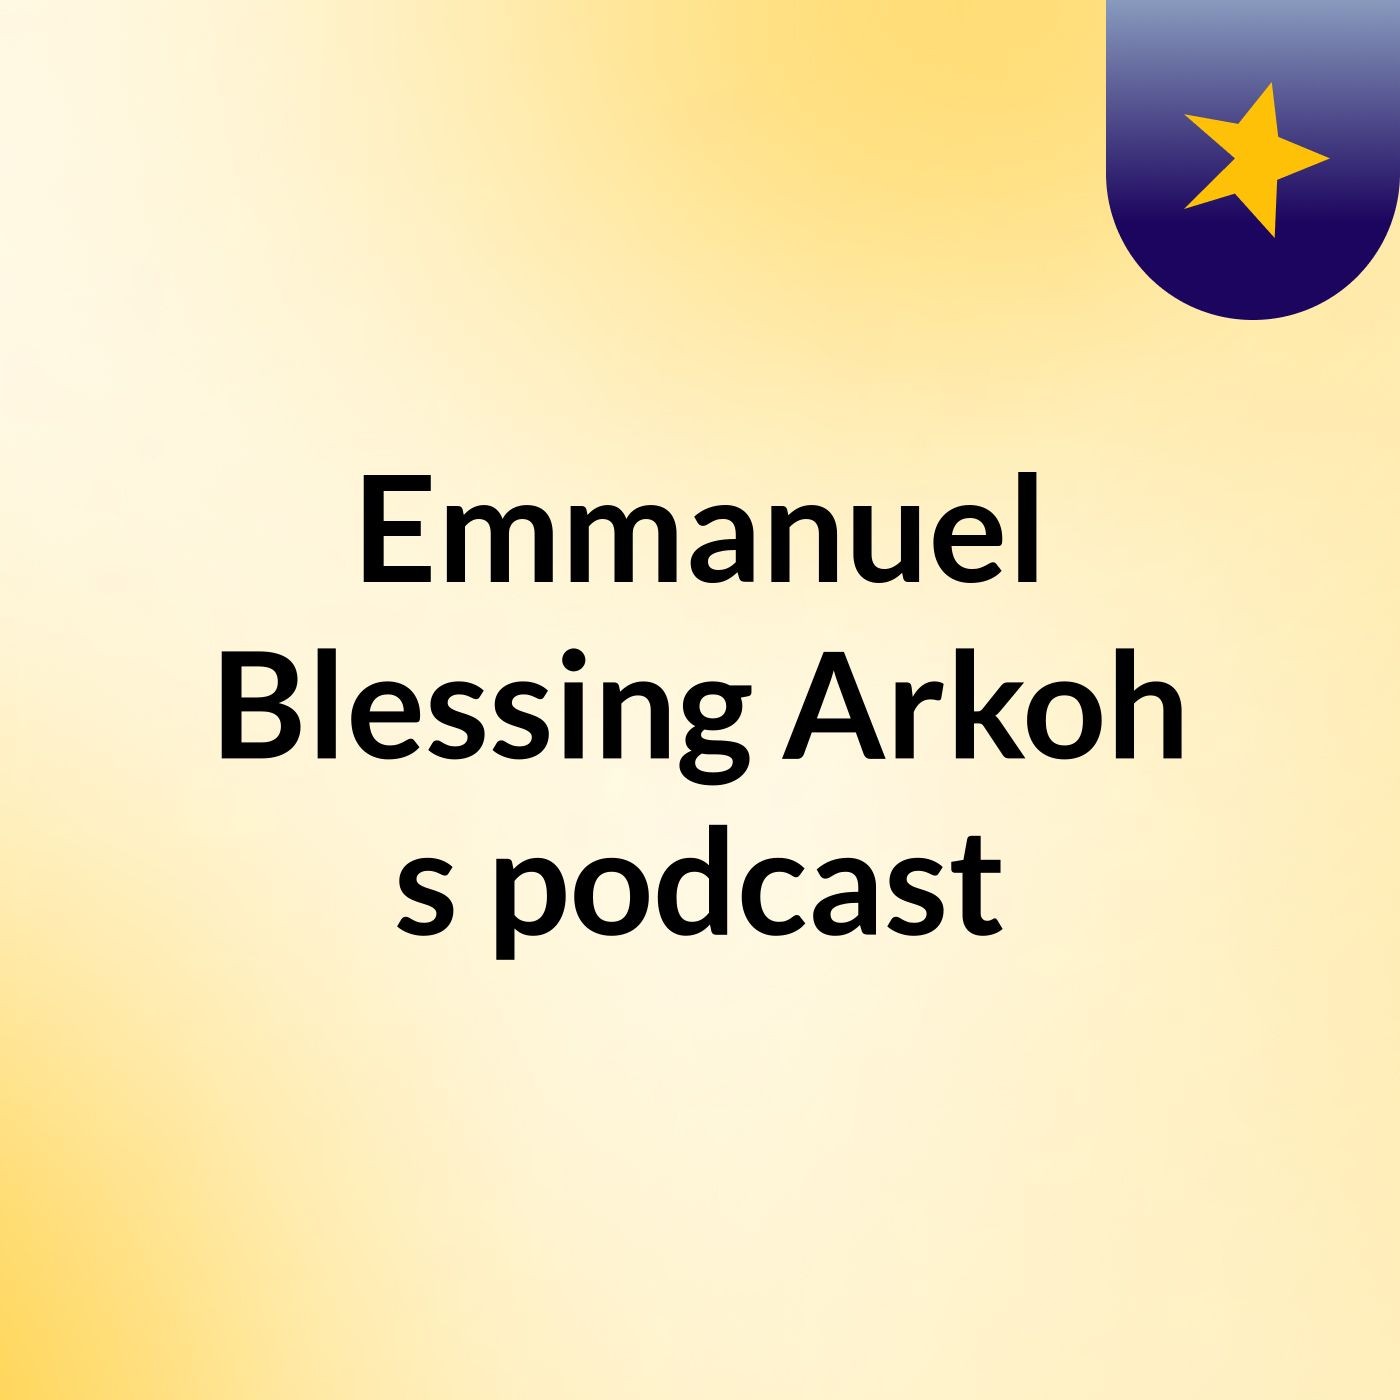 Episode 4 - Emmanuel Blessing Arkoh's podcast